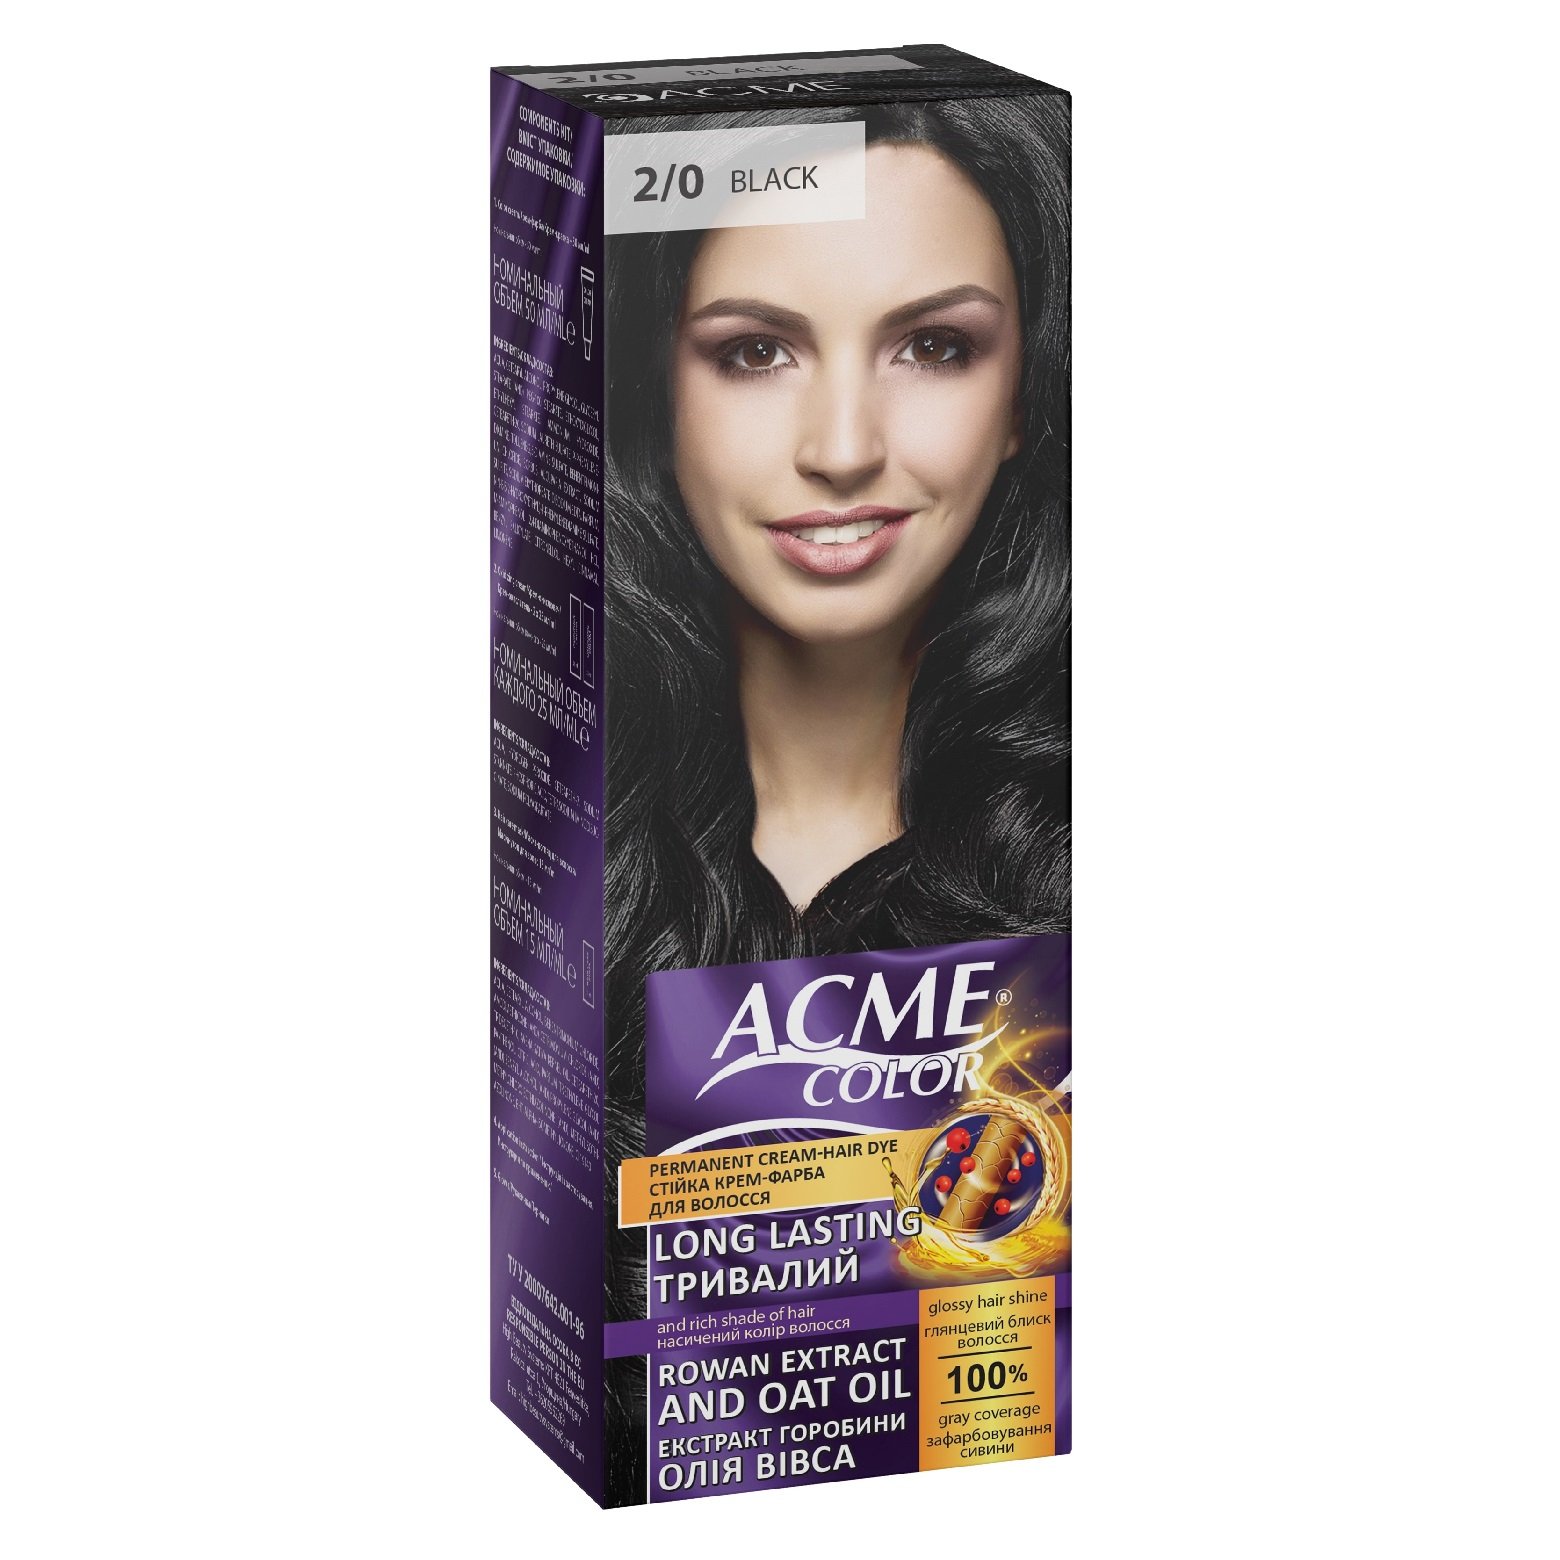 Крем-краска для волос Acme Color EXP, оттенок 2/0 (Черный), 115 мл - фото 1